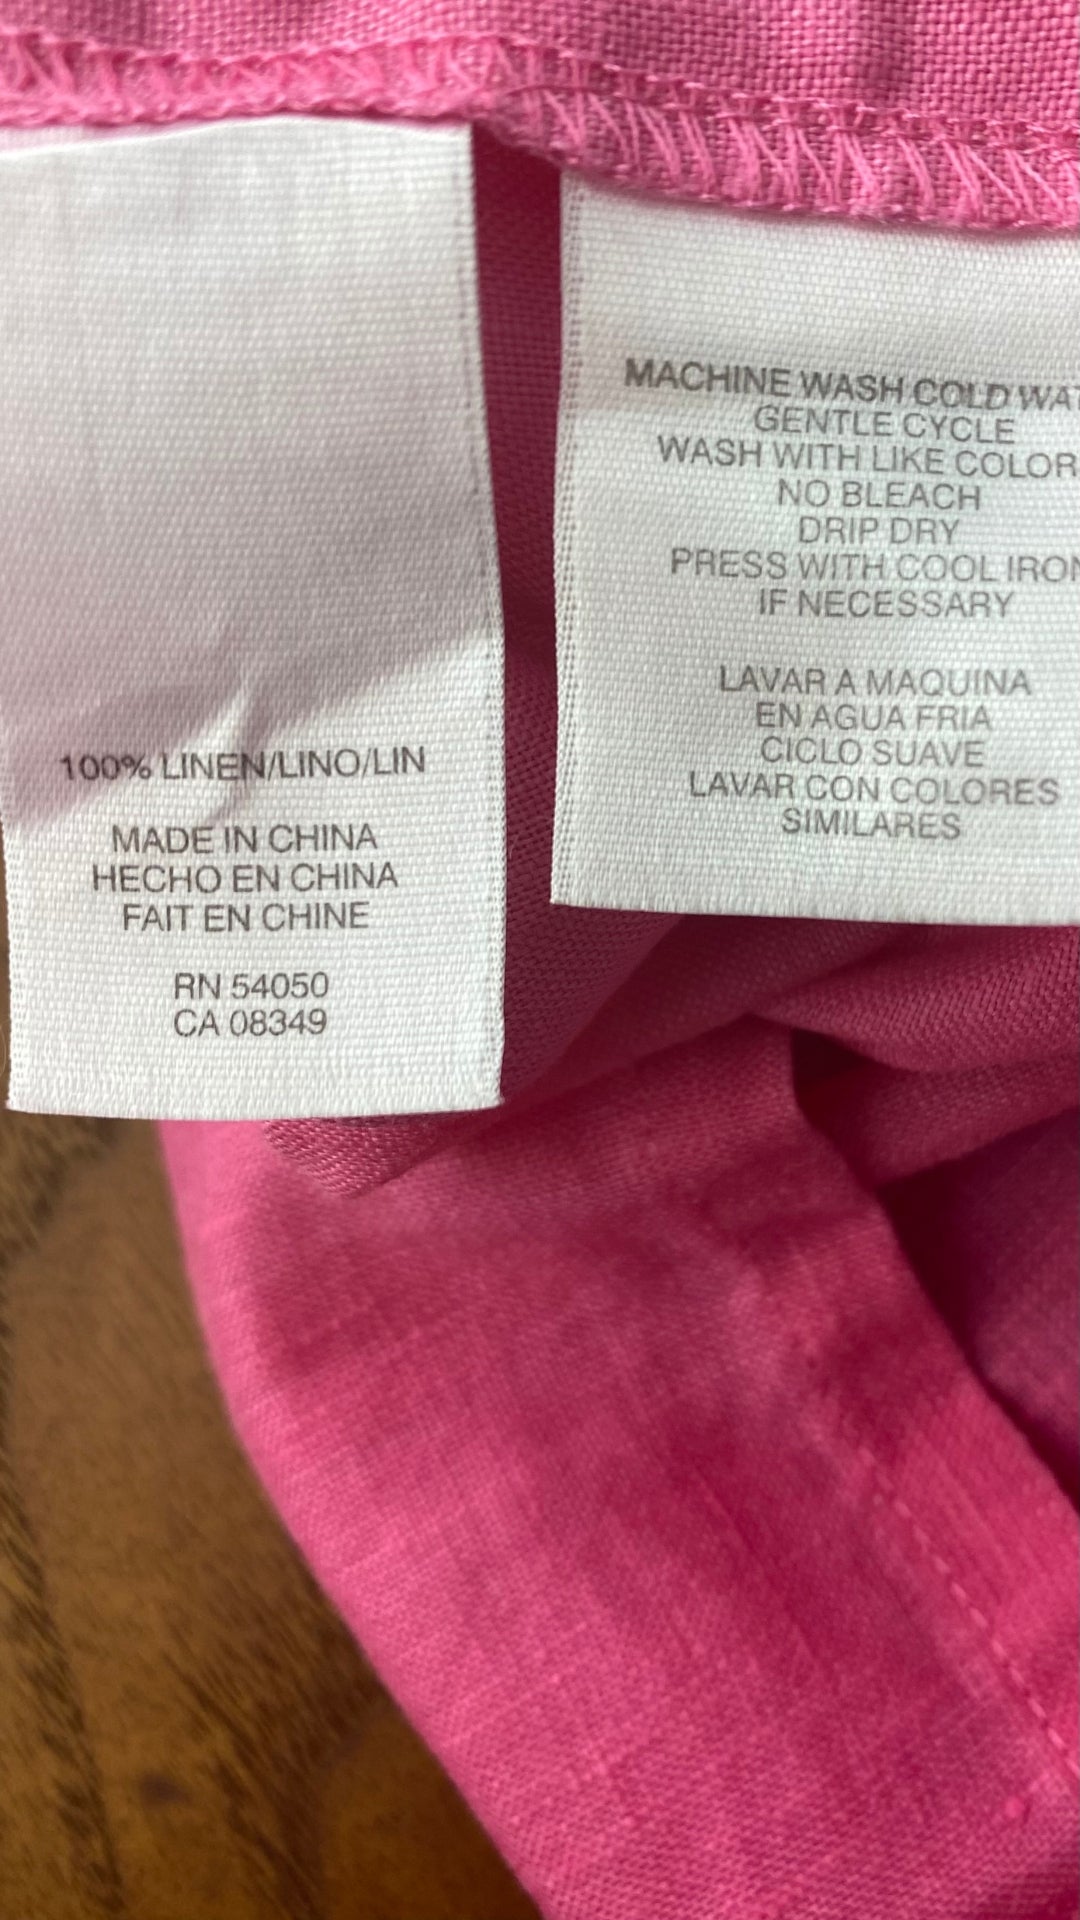 Blouse sans manches en lin rose, corsage plissé, Jones New York Sport, taille small. Vue de l'étiquette de composition et entretien.